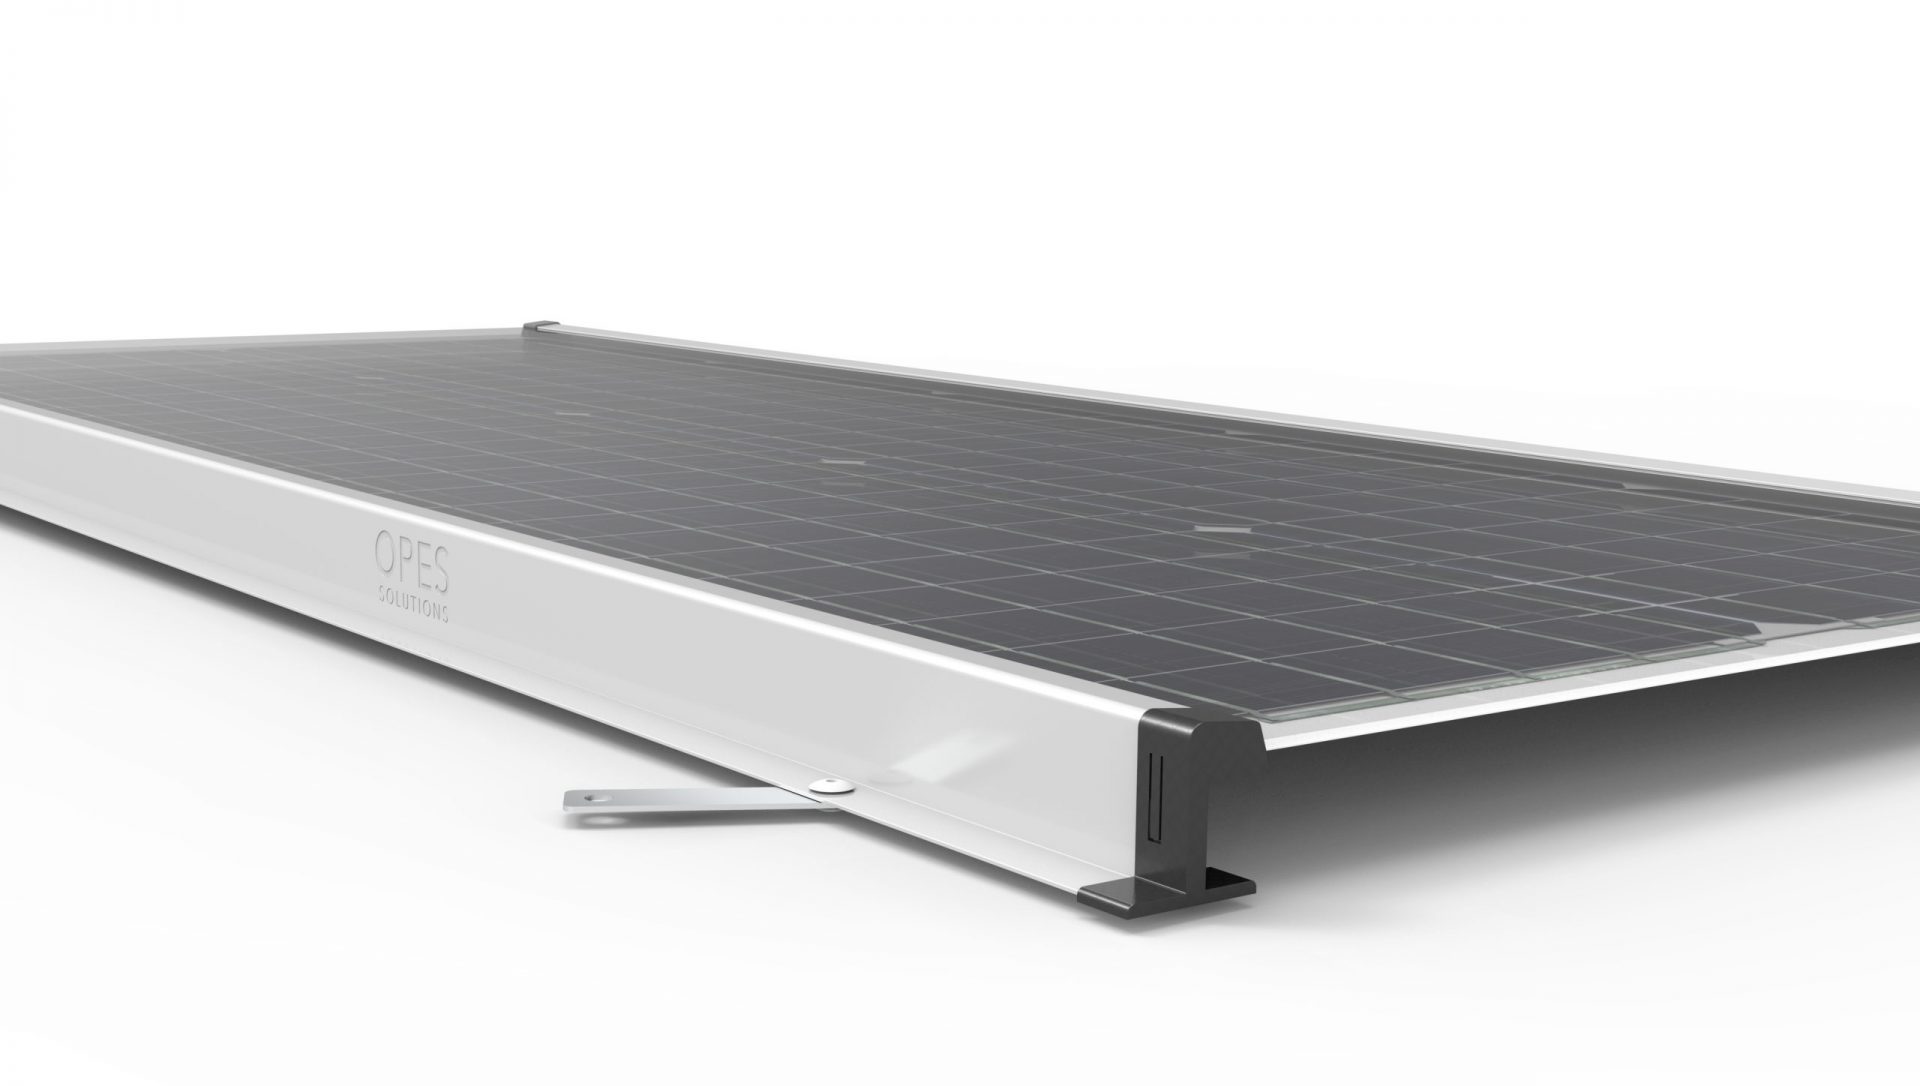 Höhere Effizienz von Solar Home Systems dank PV-Modulen mit innovativem Rahmendesign